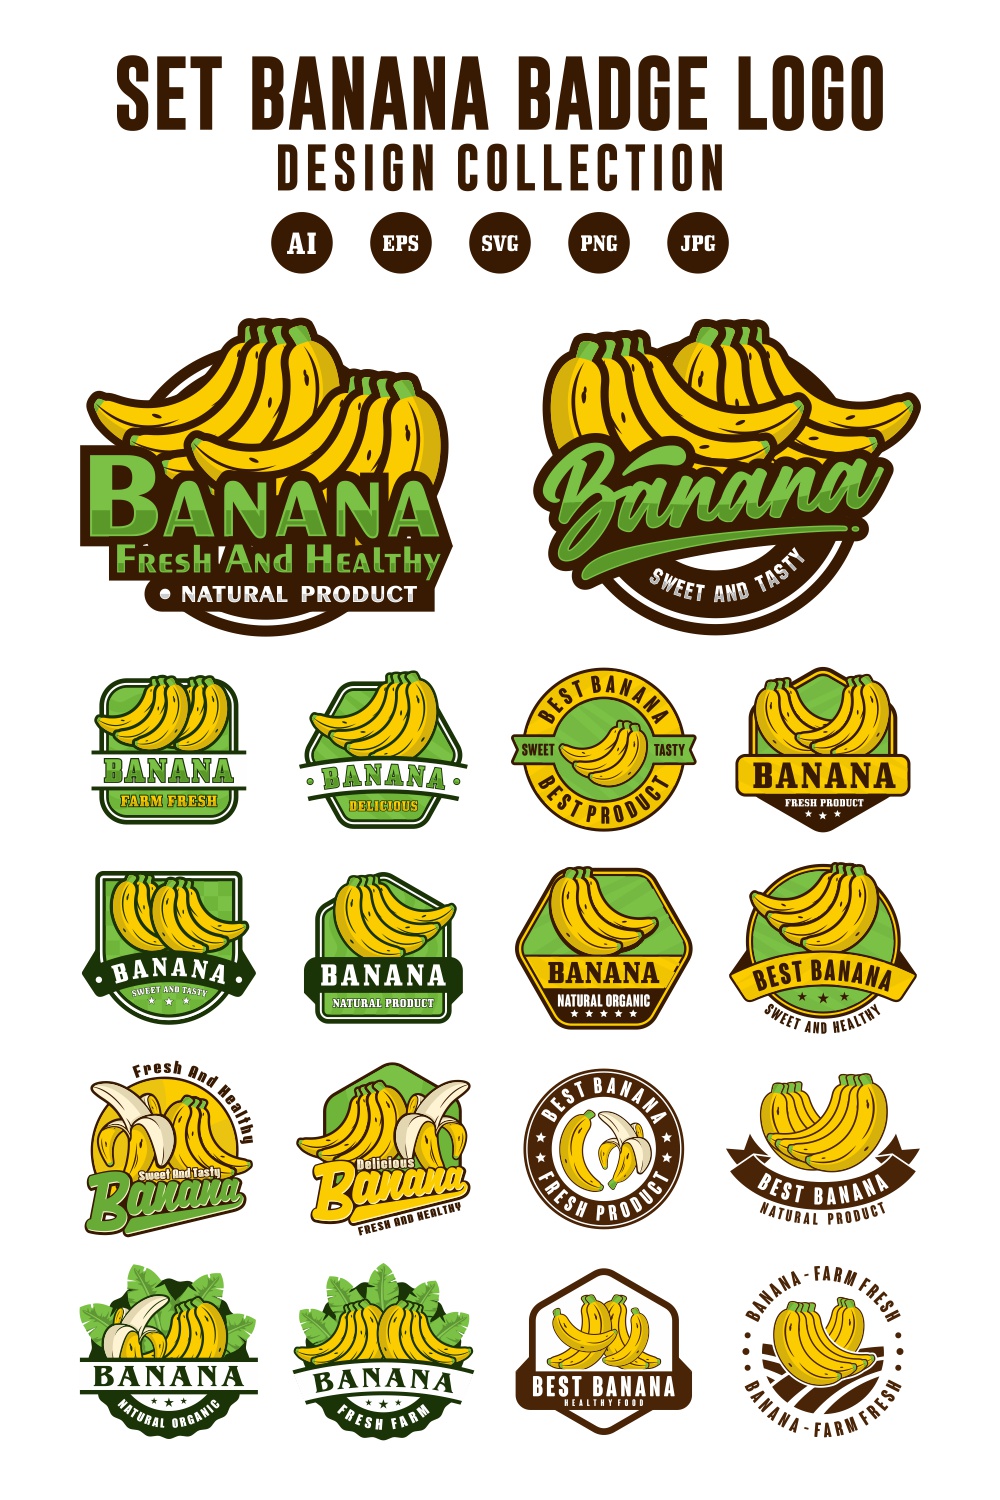 Set Banana vector badge logo design collection - $10 pinterest preview image.